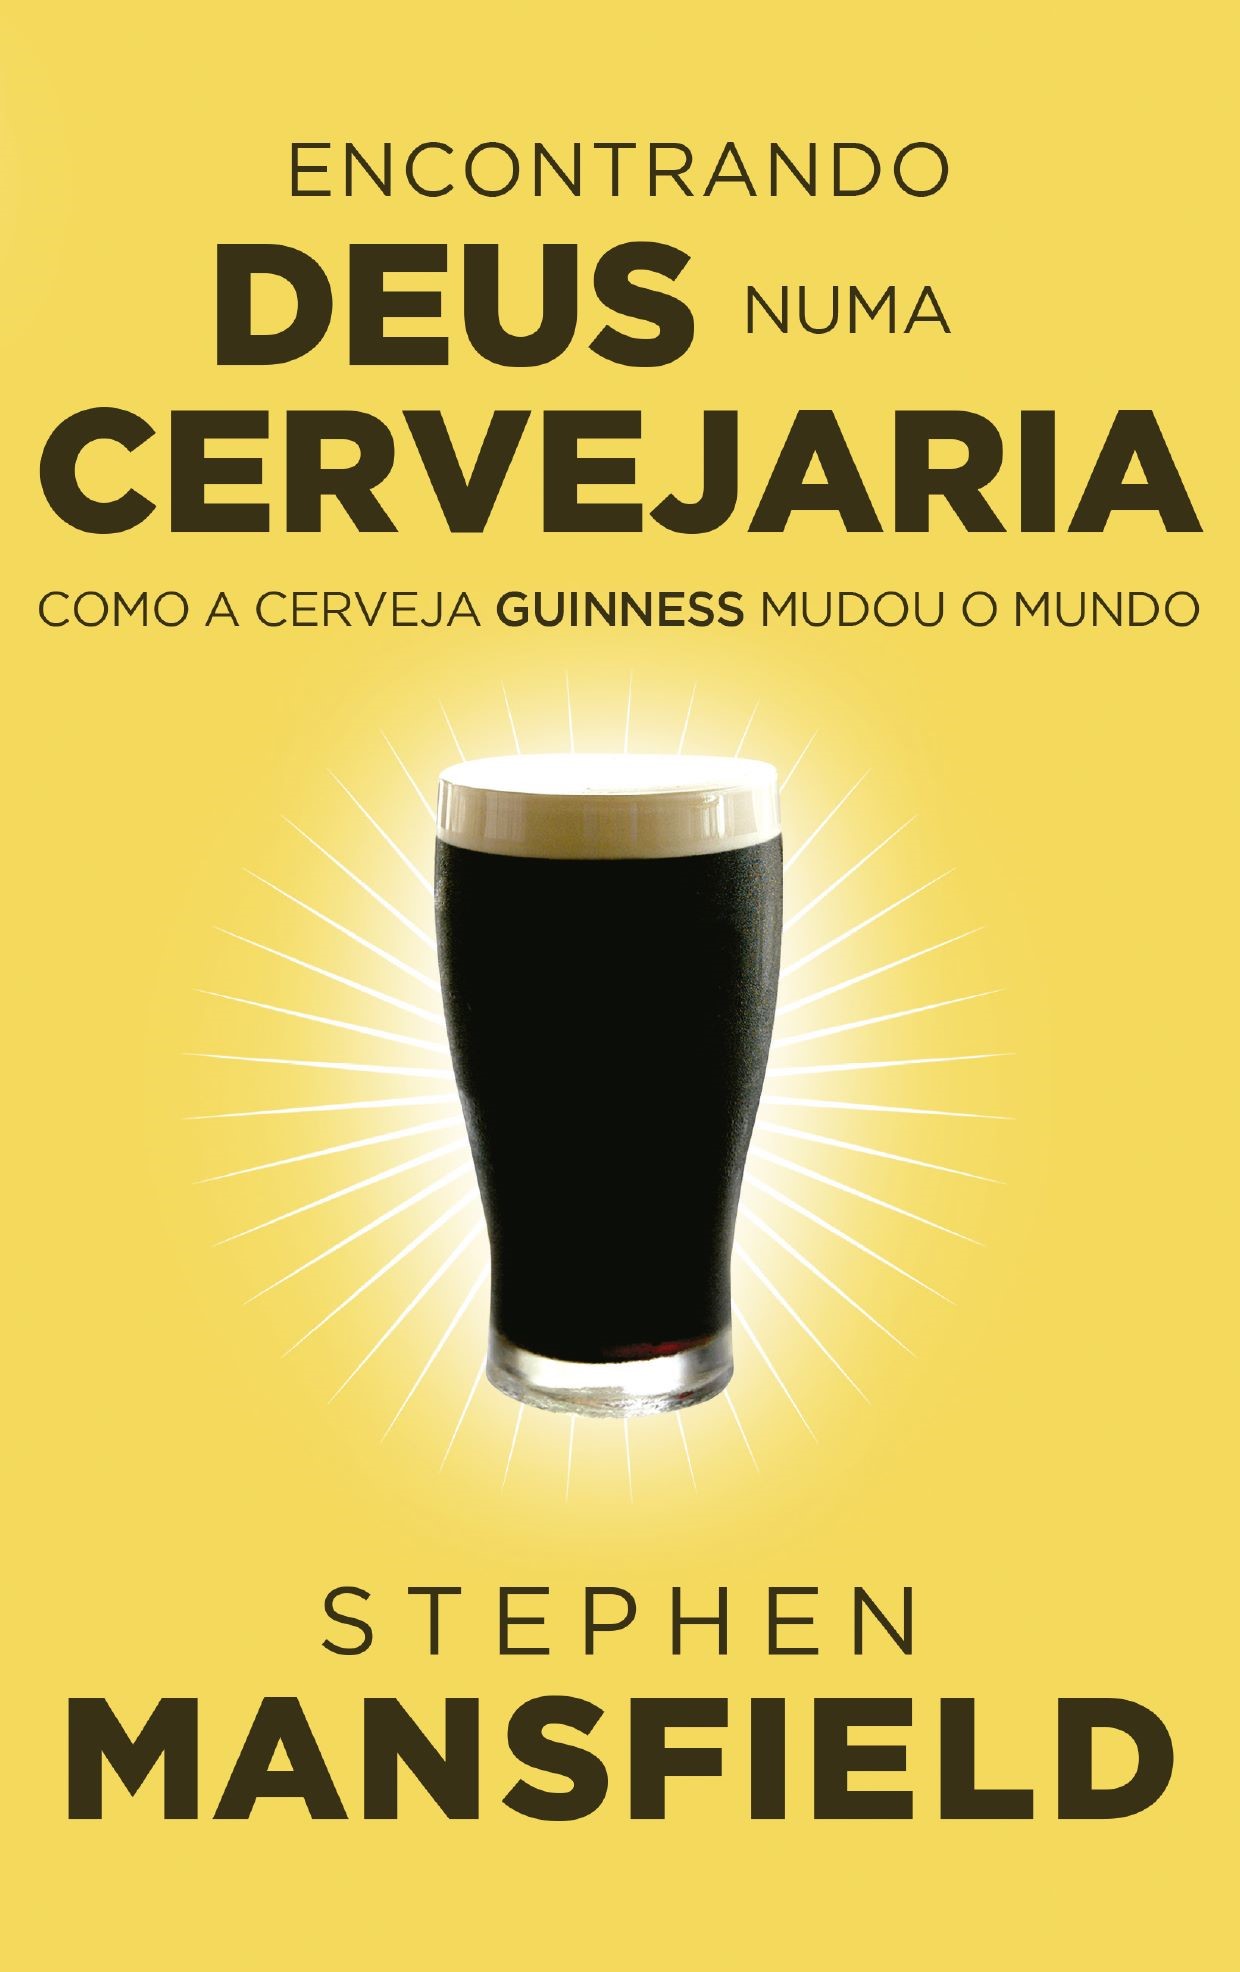 Encontrando Deus numa cervejaria: como a cerveja Guinness mudou o mundo